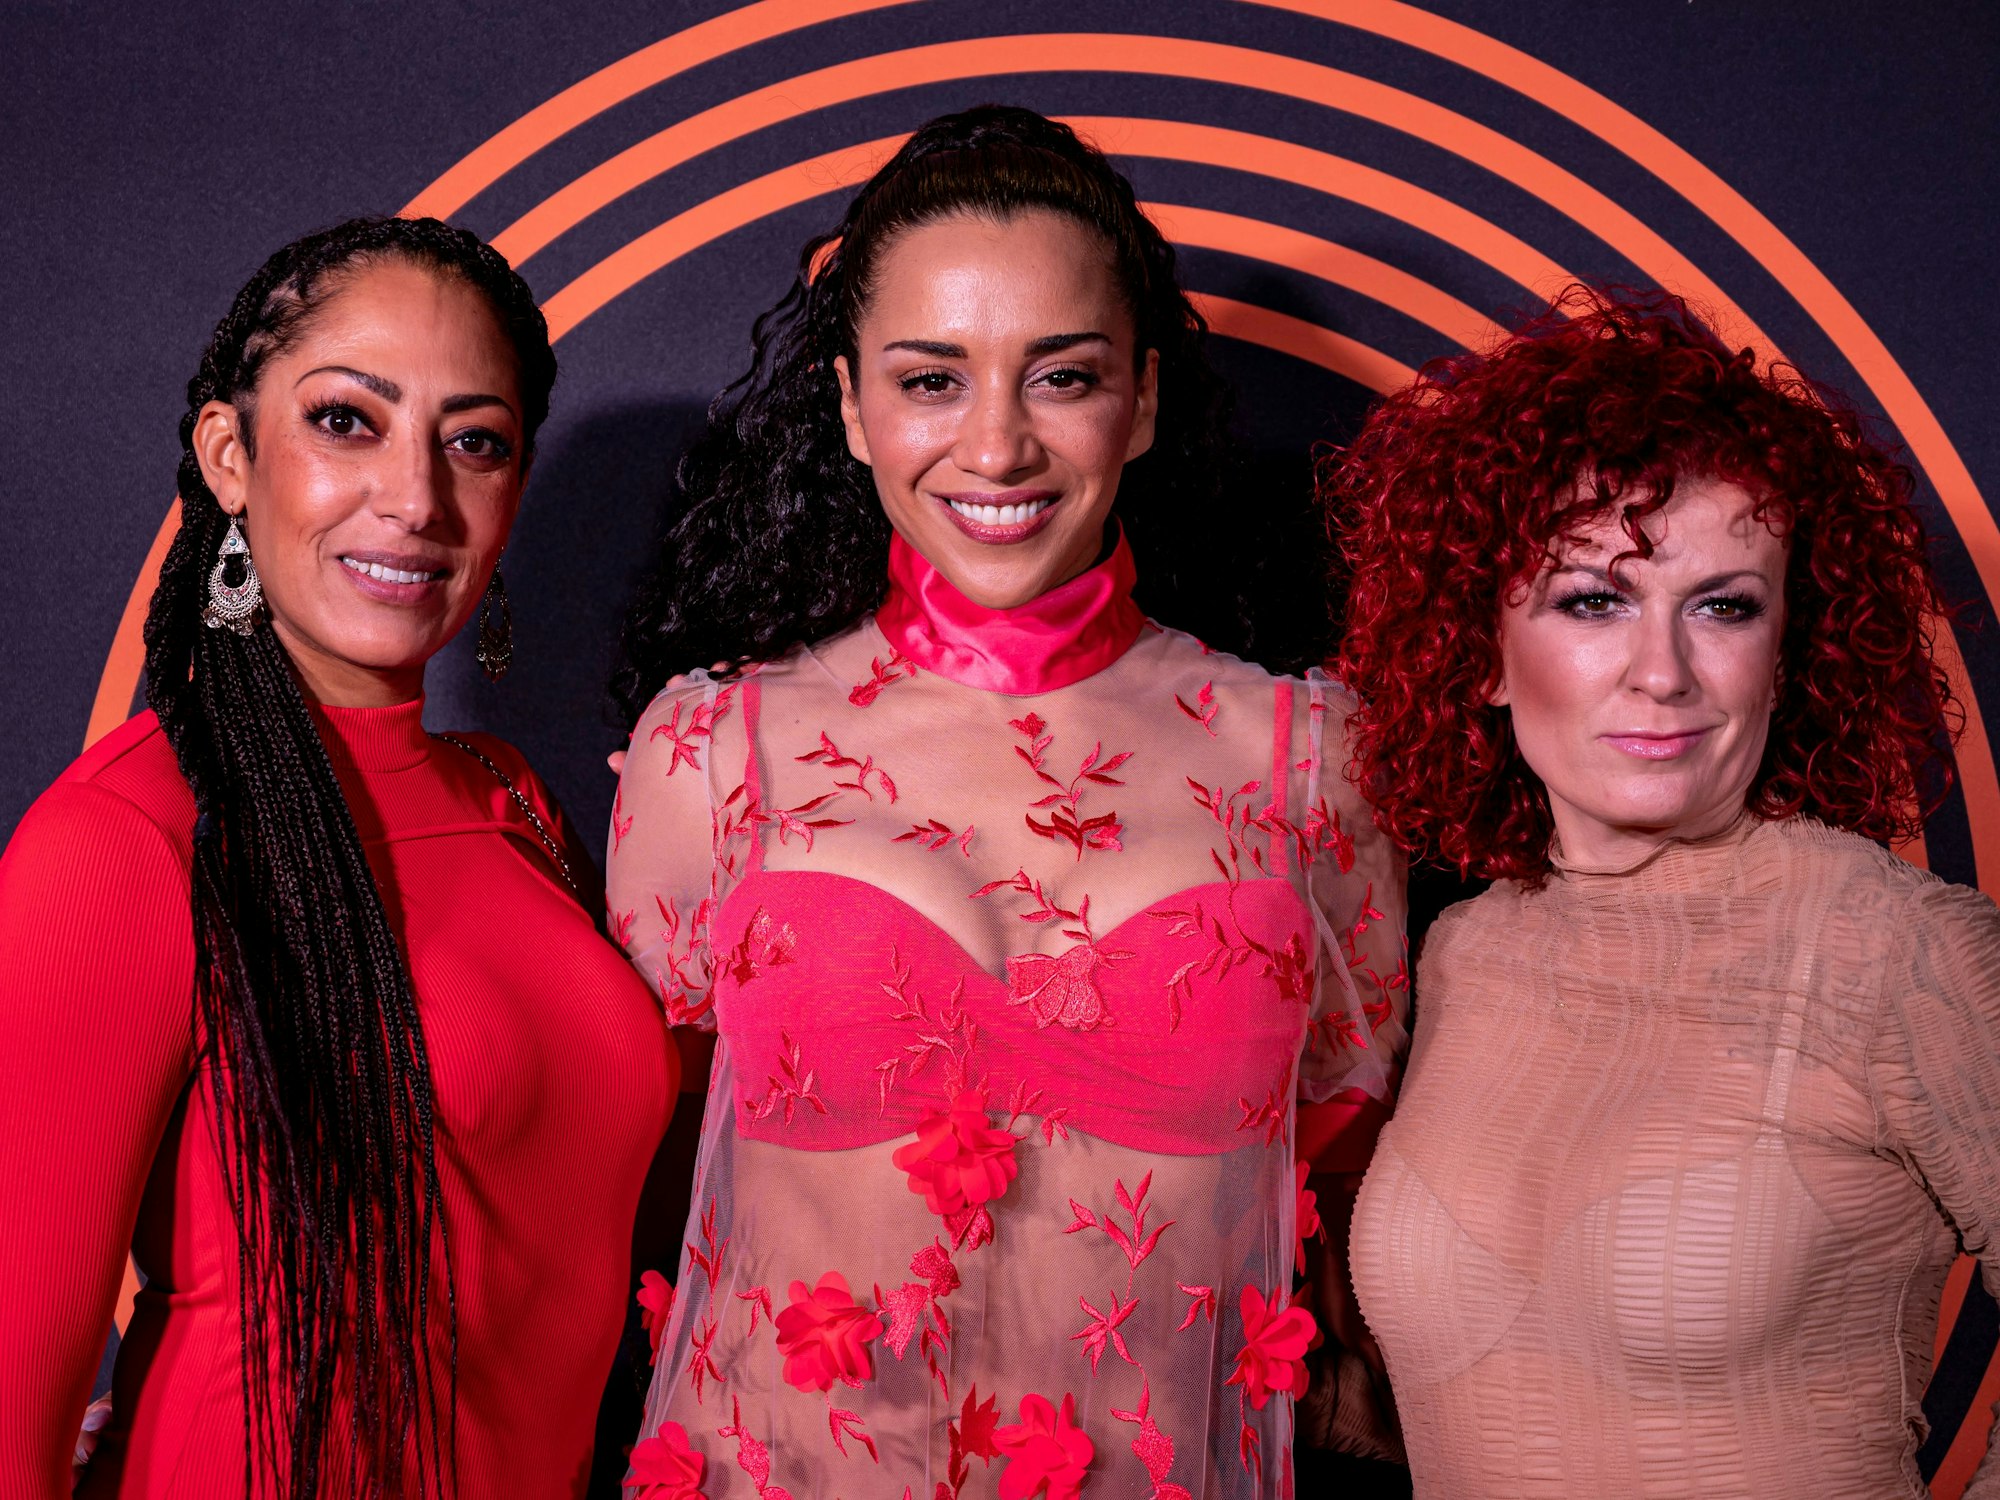 Die Band No Angels, Jessica Wahls (von links), Nadja Benaissa und Lucy Diakovska stehen auf dem Roten Teppich für den Preis für Popkultur.